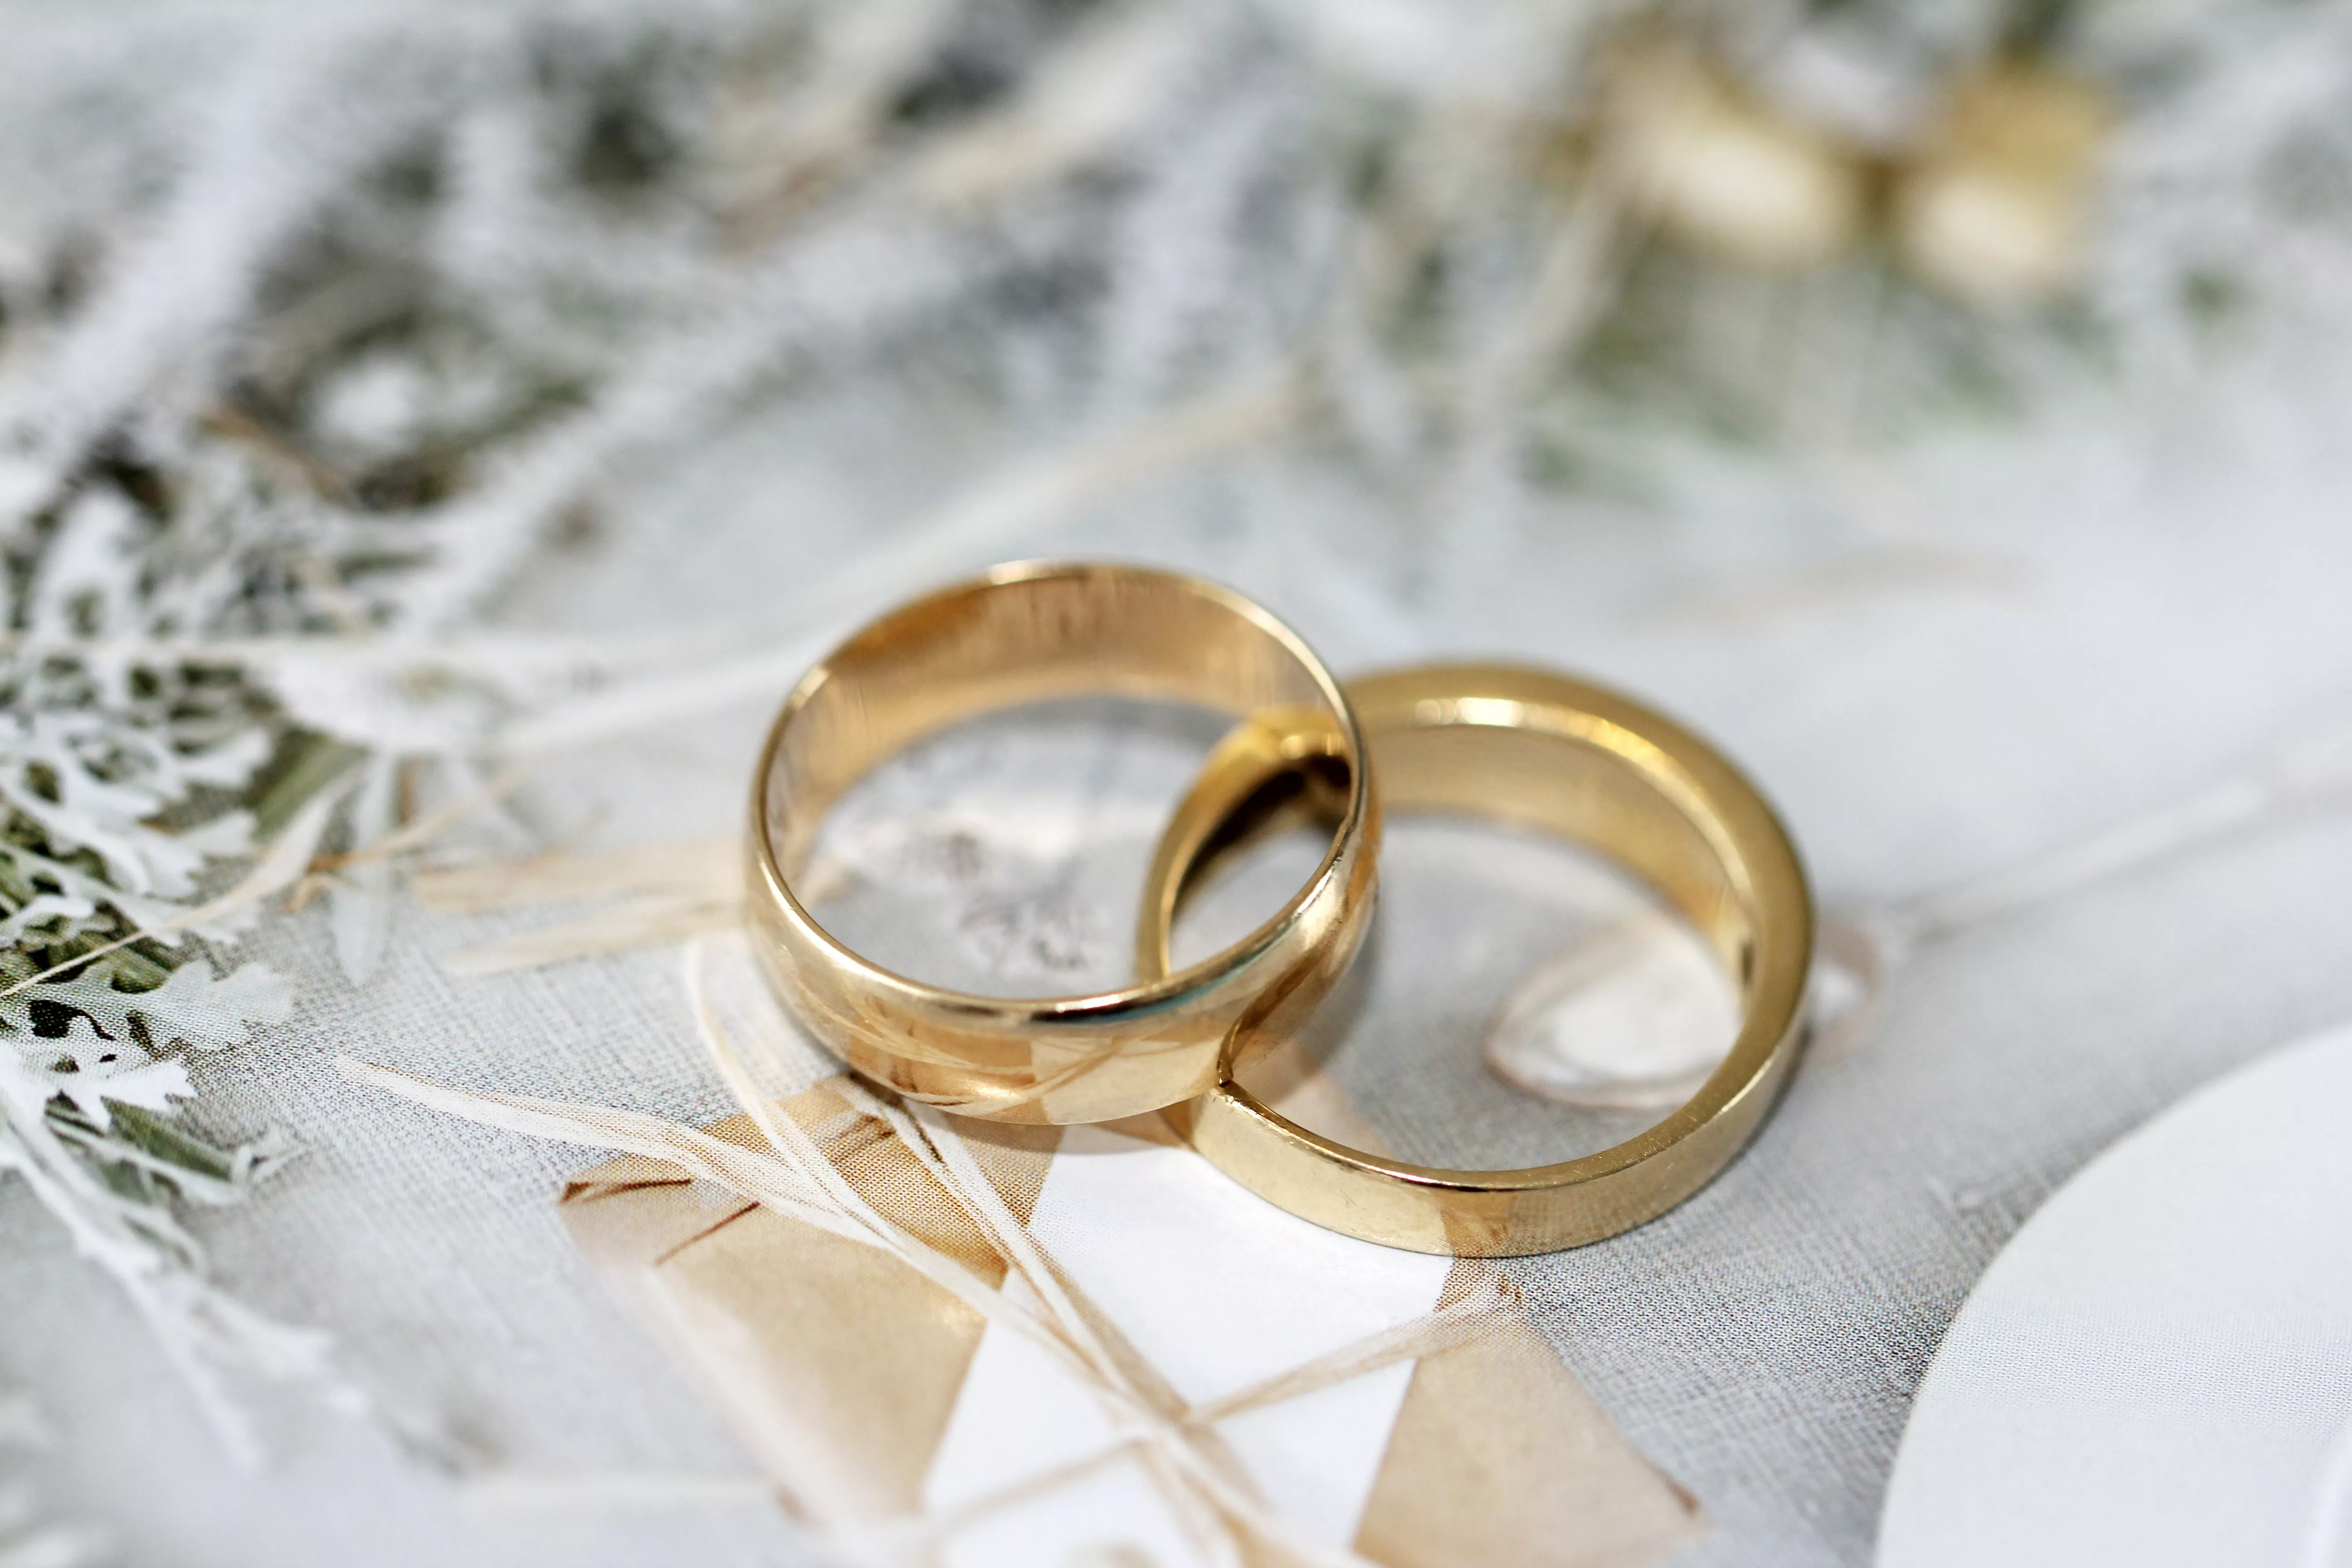 黃金是一般常見的婚戒材質，溫柔的色澤深受新人喜愛。